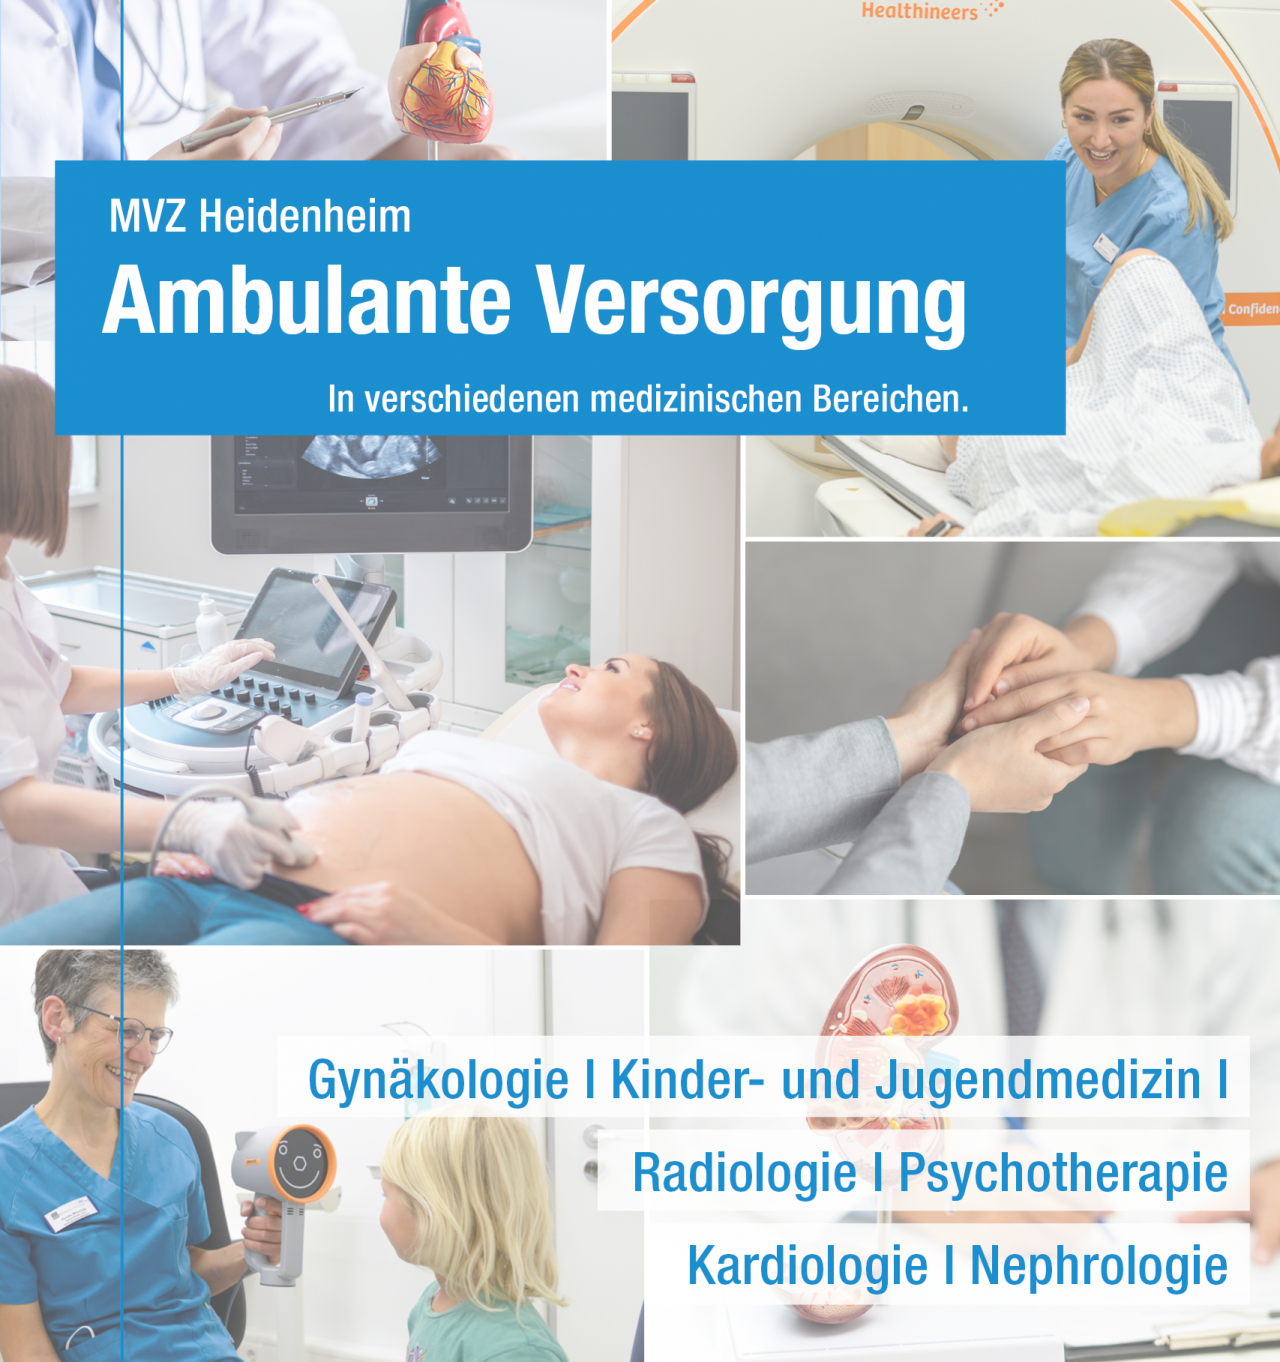 MVZ - Medizinisches Versorgungszentrum
Klinikum Heidenheim